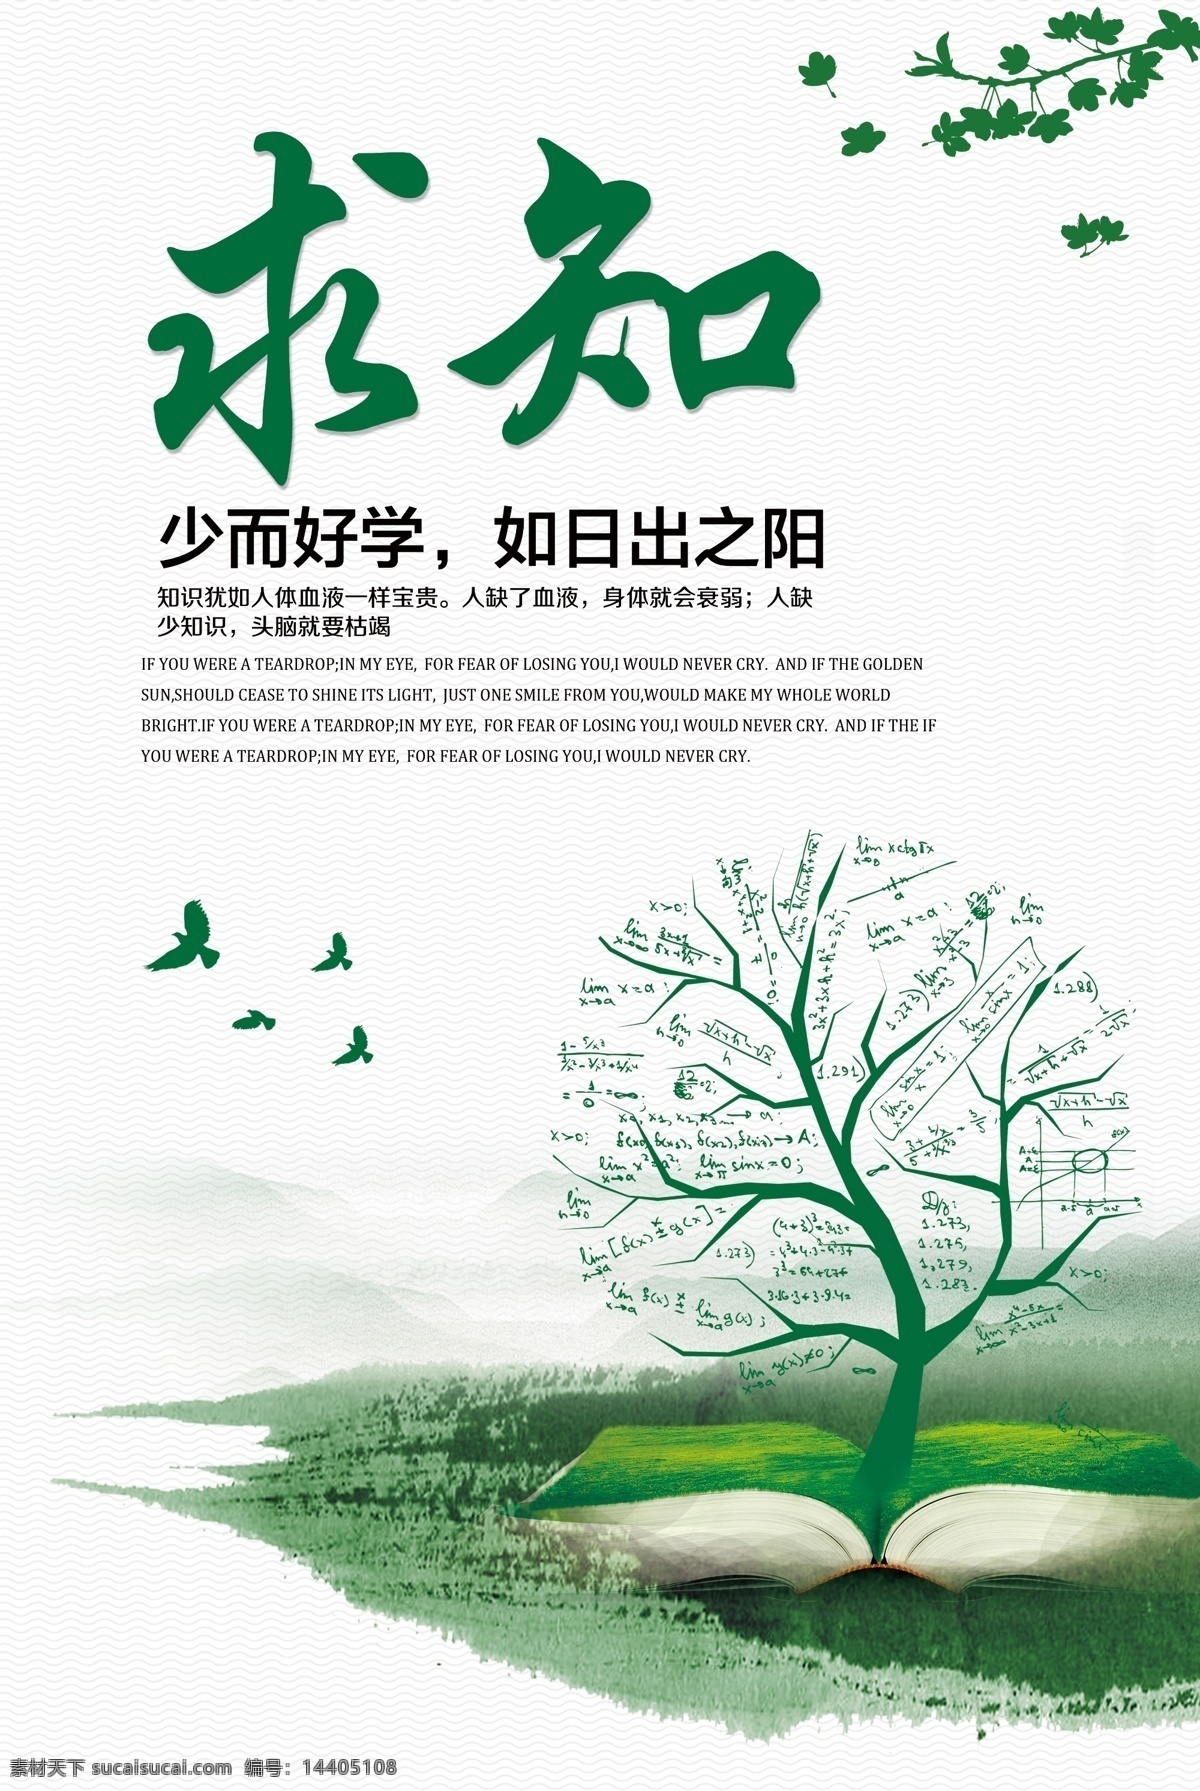 绿色调 绿色的树 飞鸟 好学求知 励志展板 励志 文化艺术 传统文化